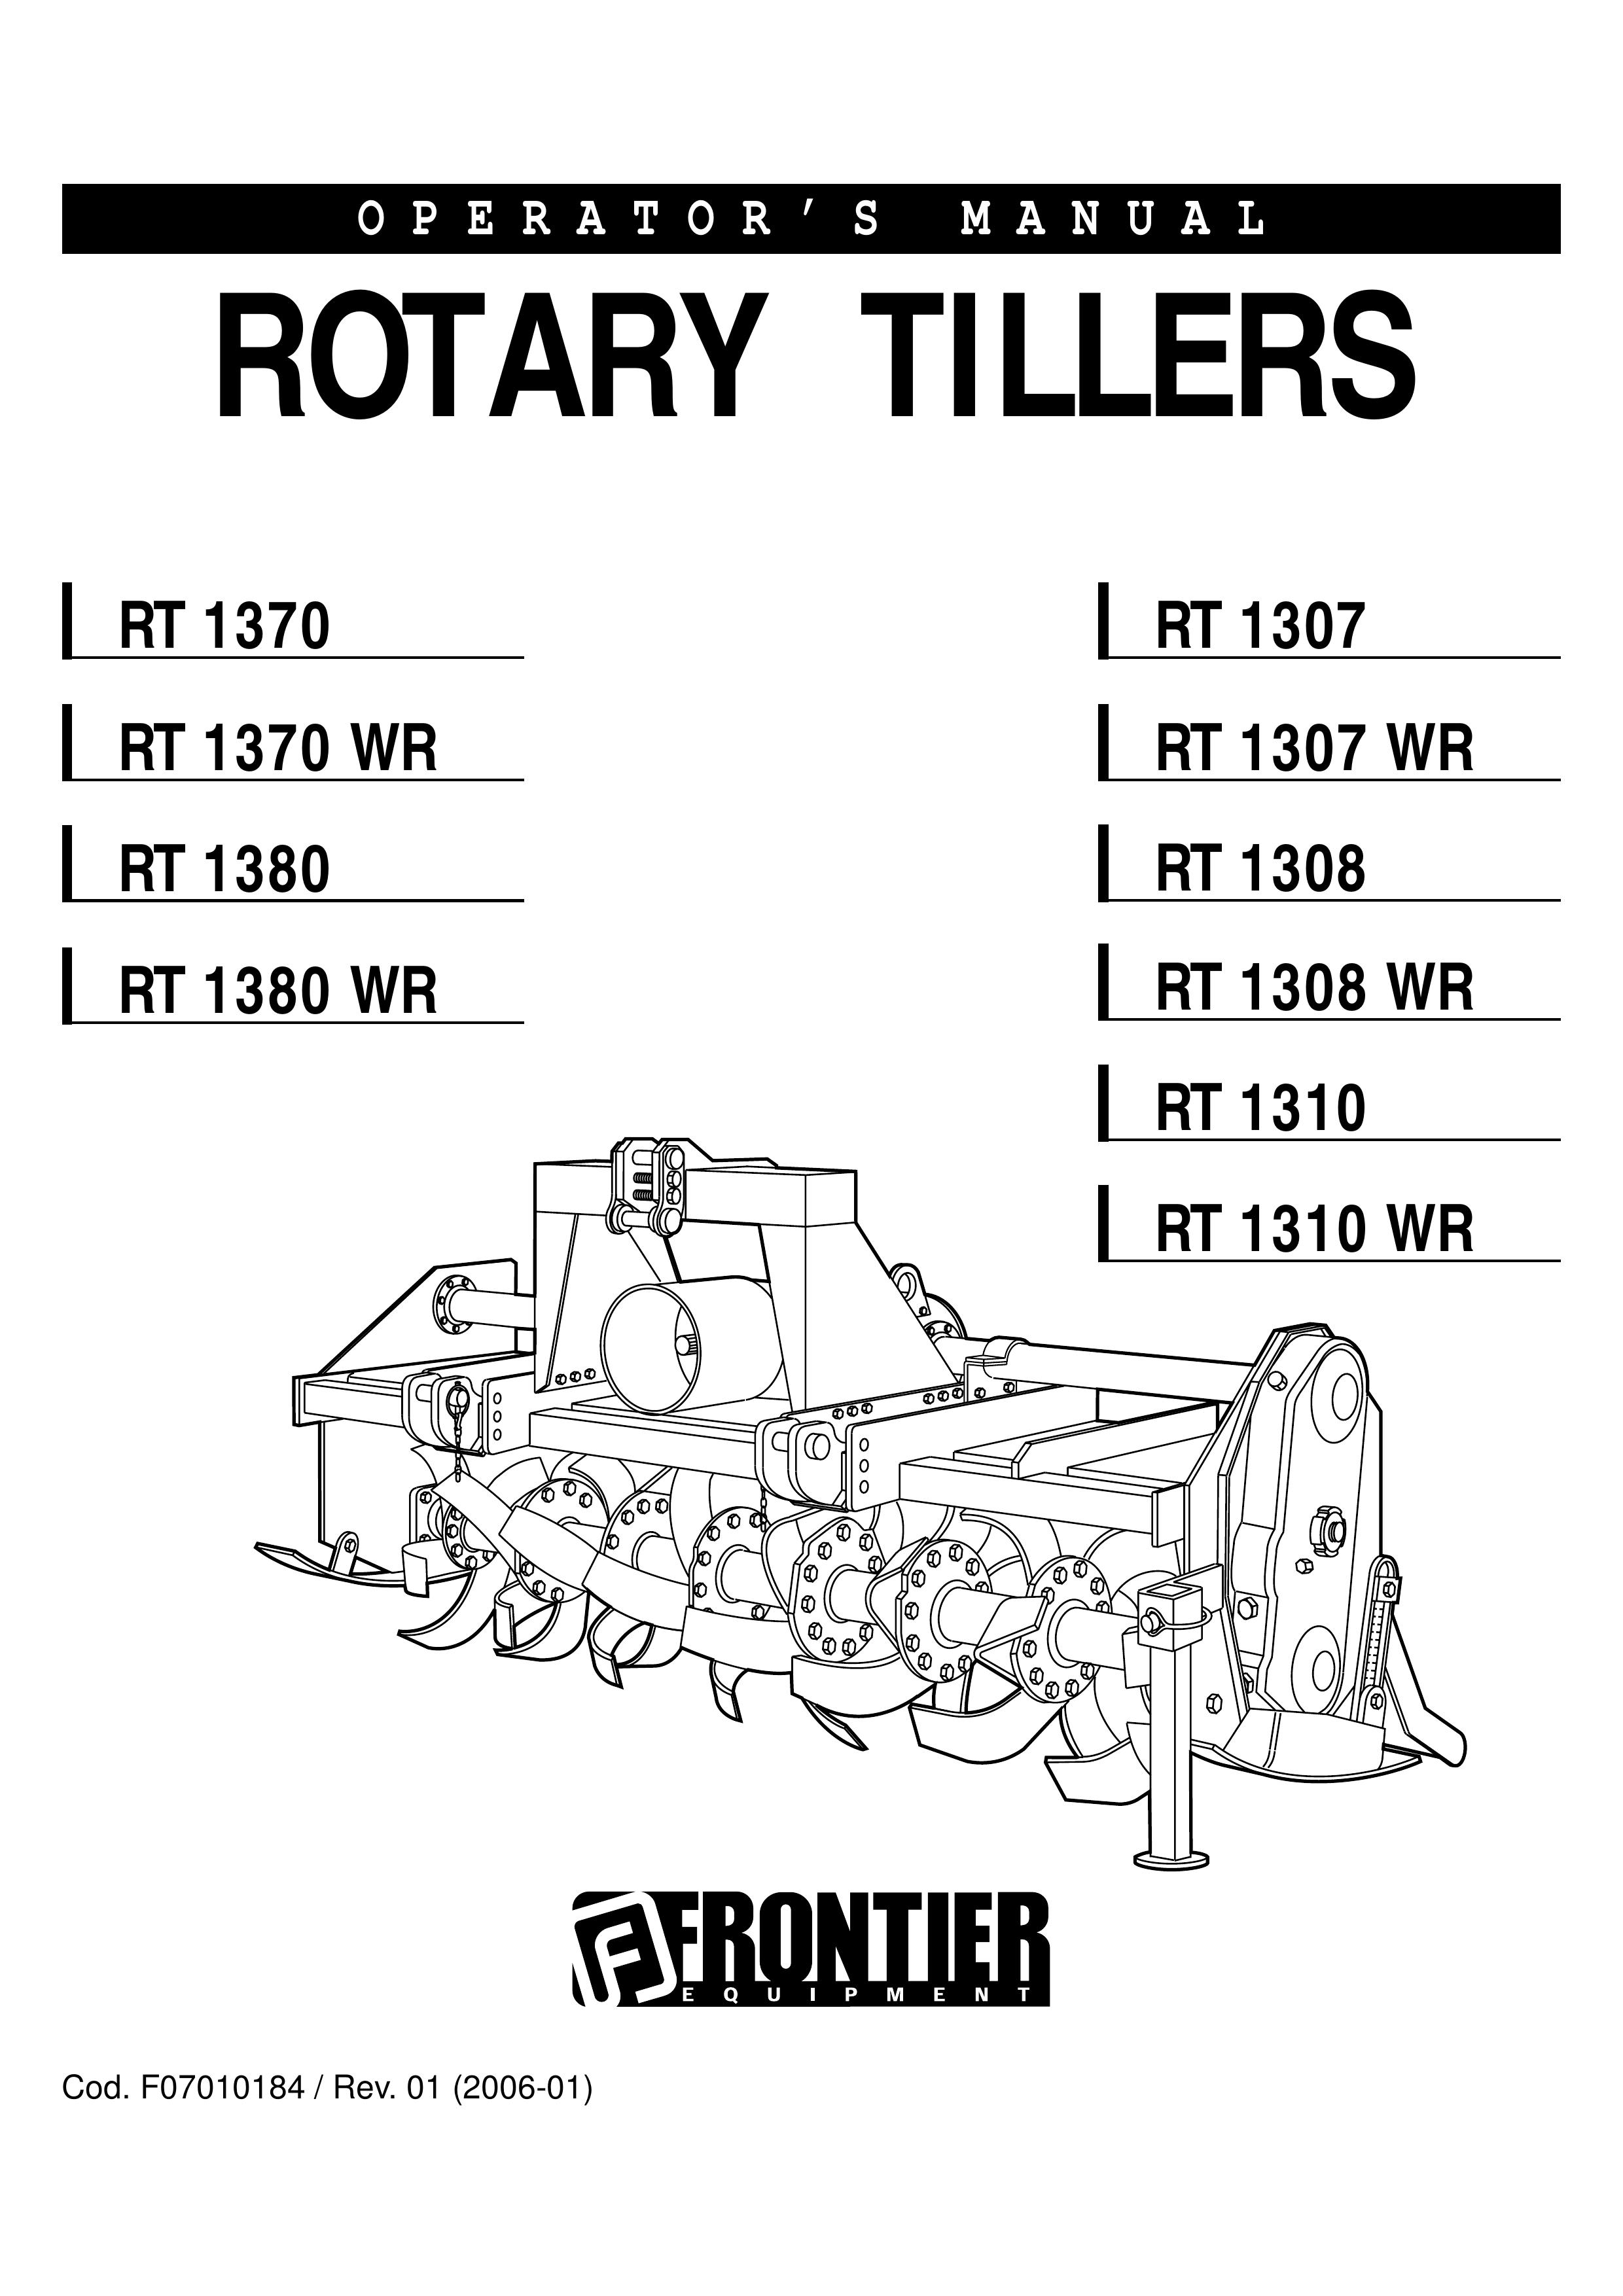 John Deere RT 1308 WR Tiller User Manual